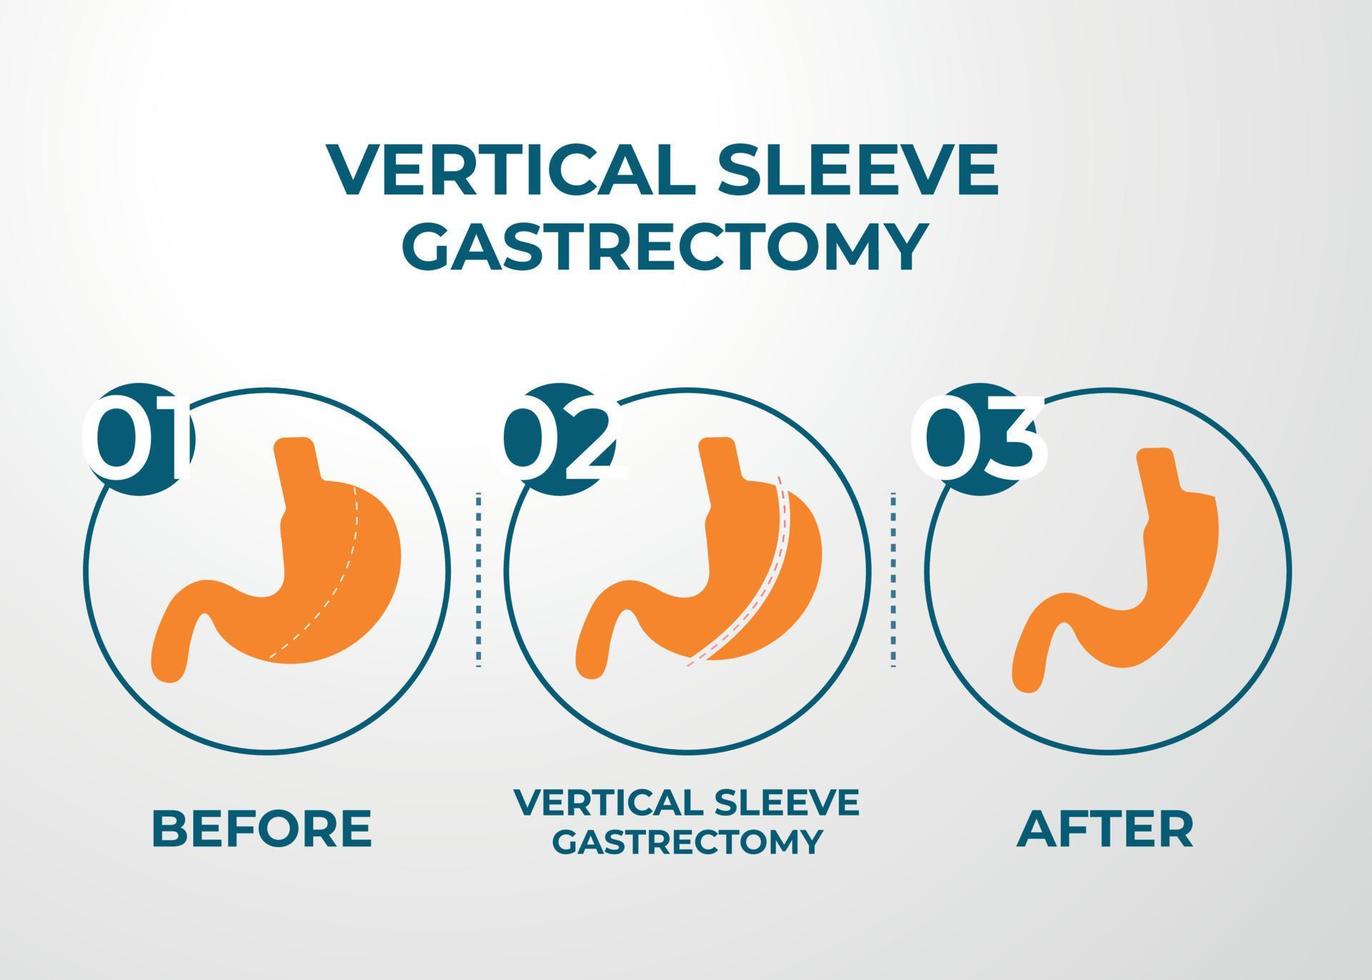 gastrectomie à manchon laparoscopique, gastrectomie verticale, chirurgie de perte de poids illustration vectorielle de la chirurgie de réduction de l'estomac vecteur